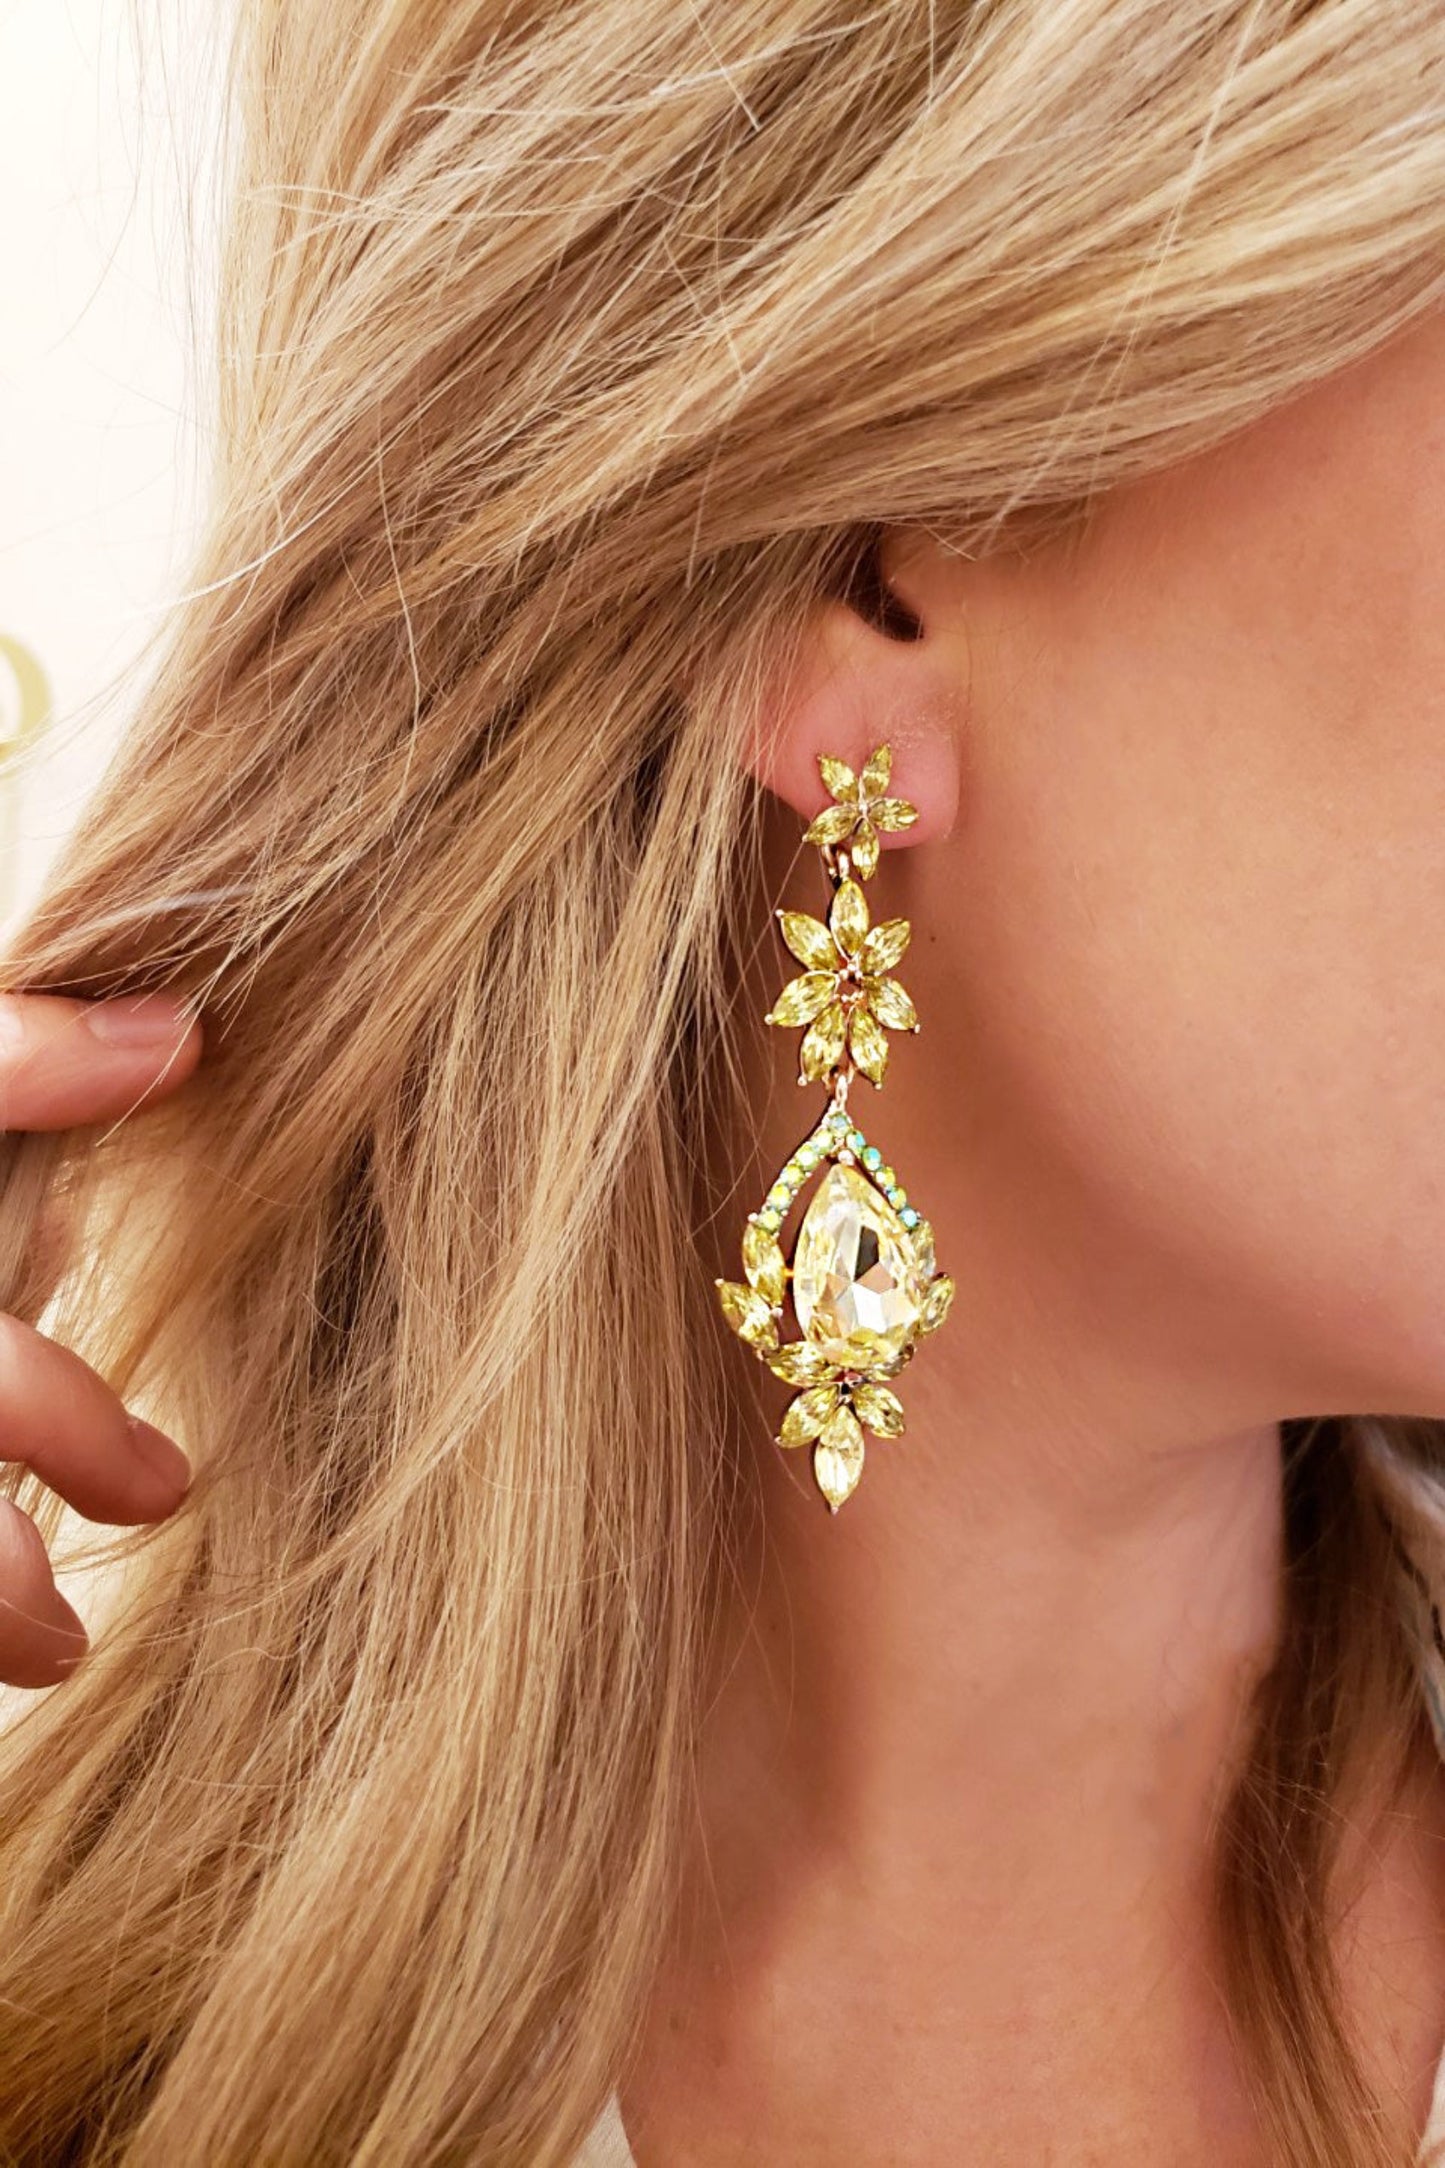 Jane Chartreuse Gemstone Earrings | Formal Crystal Drop Earrings | Pear and Starburst Crystal Earrings | Wedding and Formal Accessories